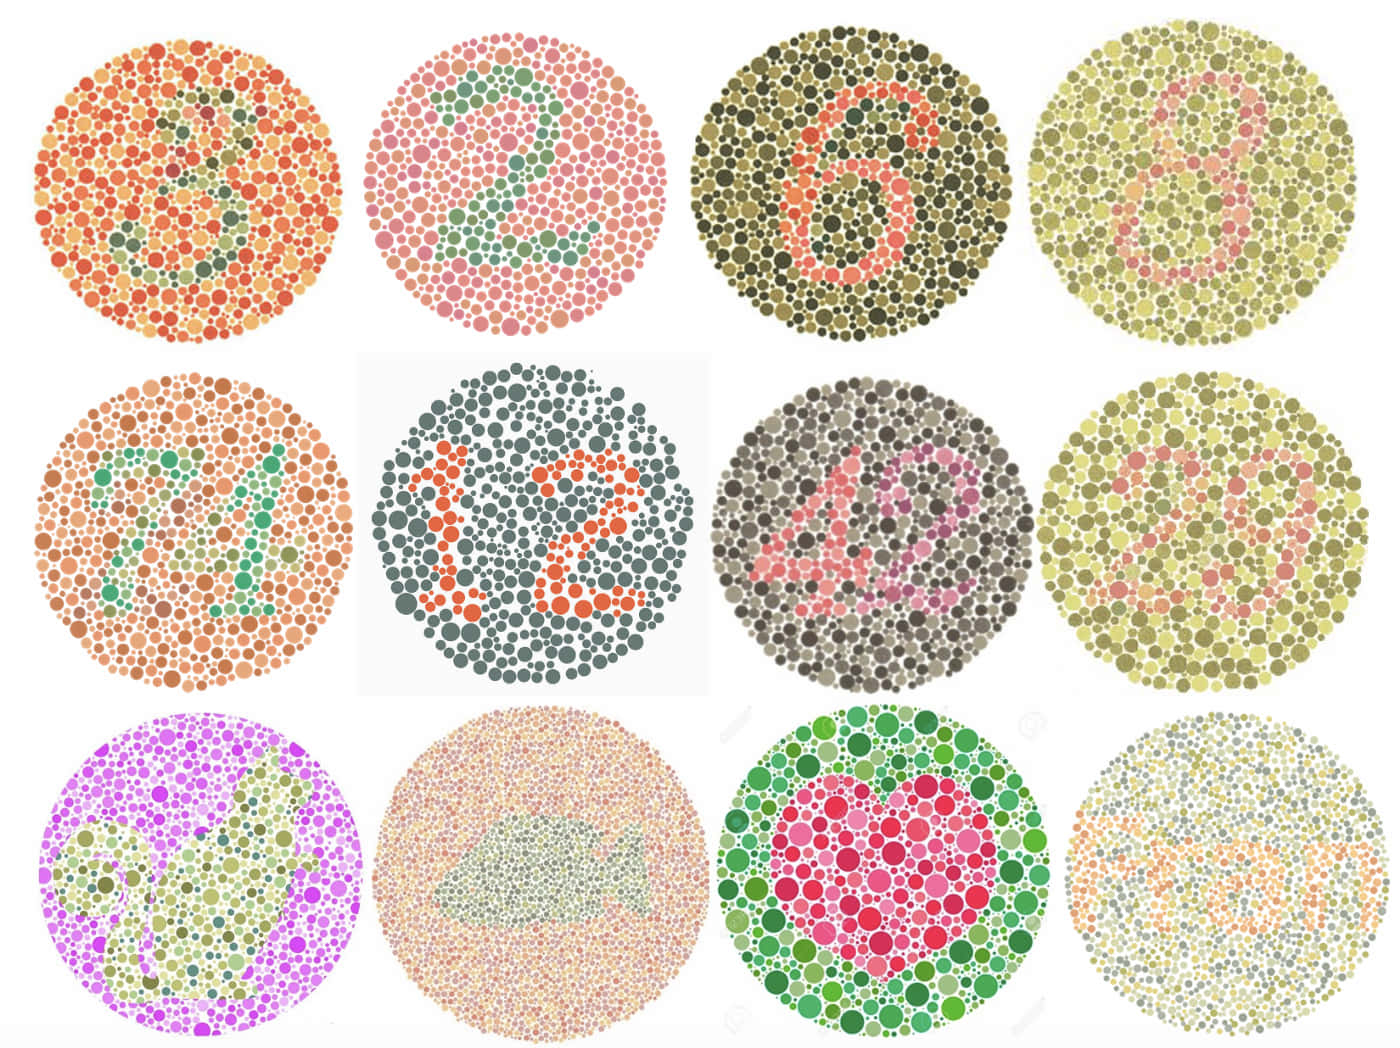 Unconjunto De Círculos Coloridos Con Números En Ellos